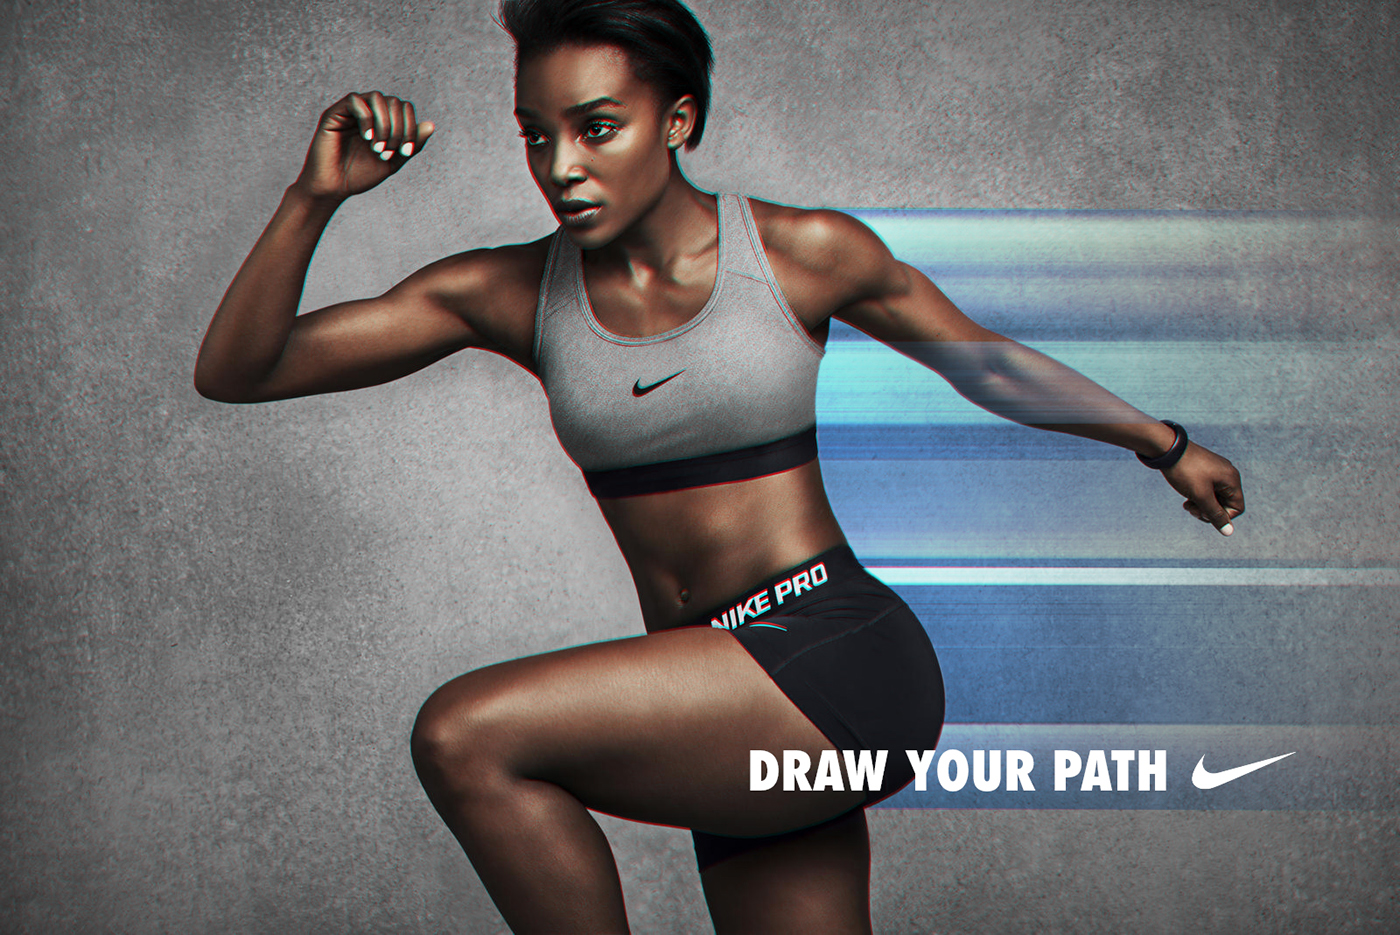 Nike sport color motivation